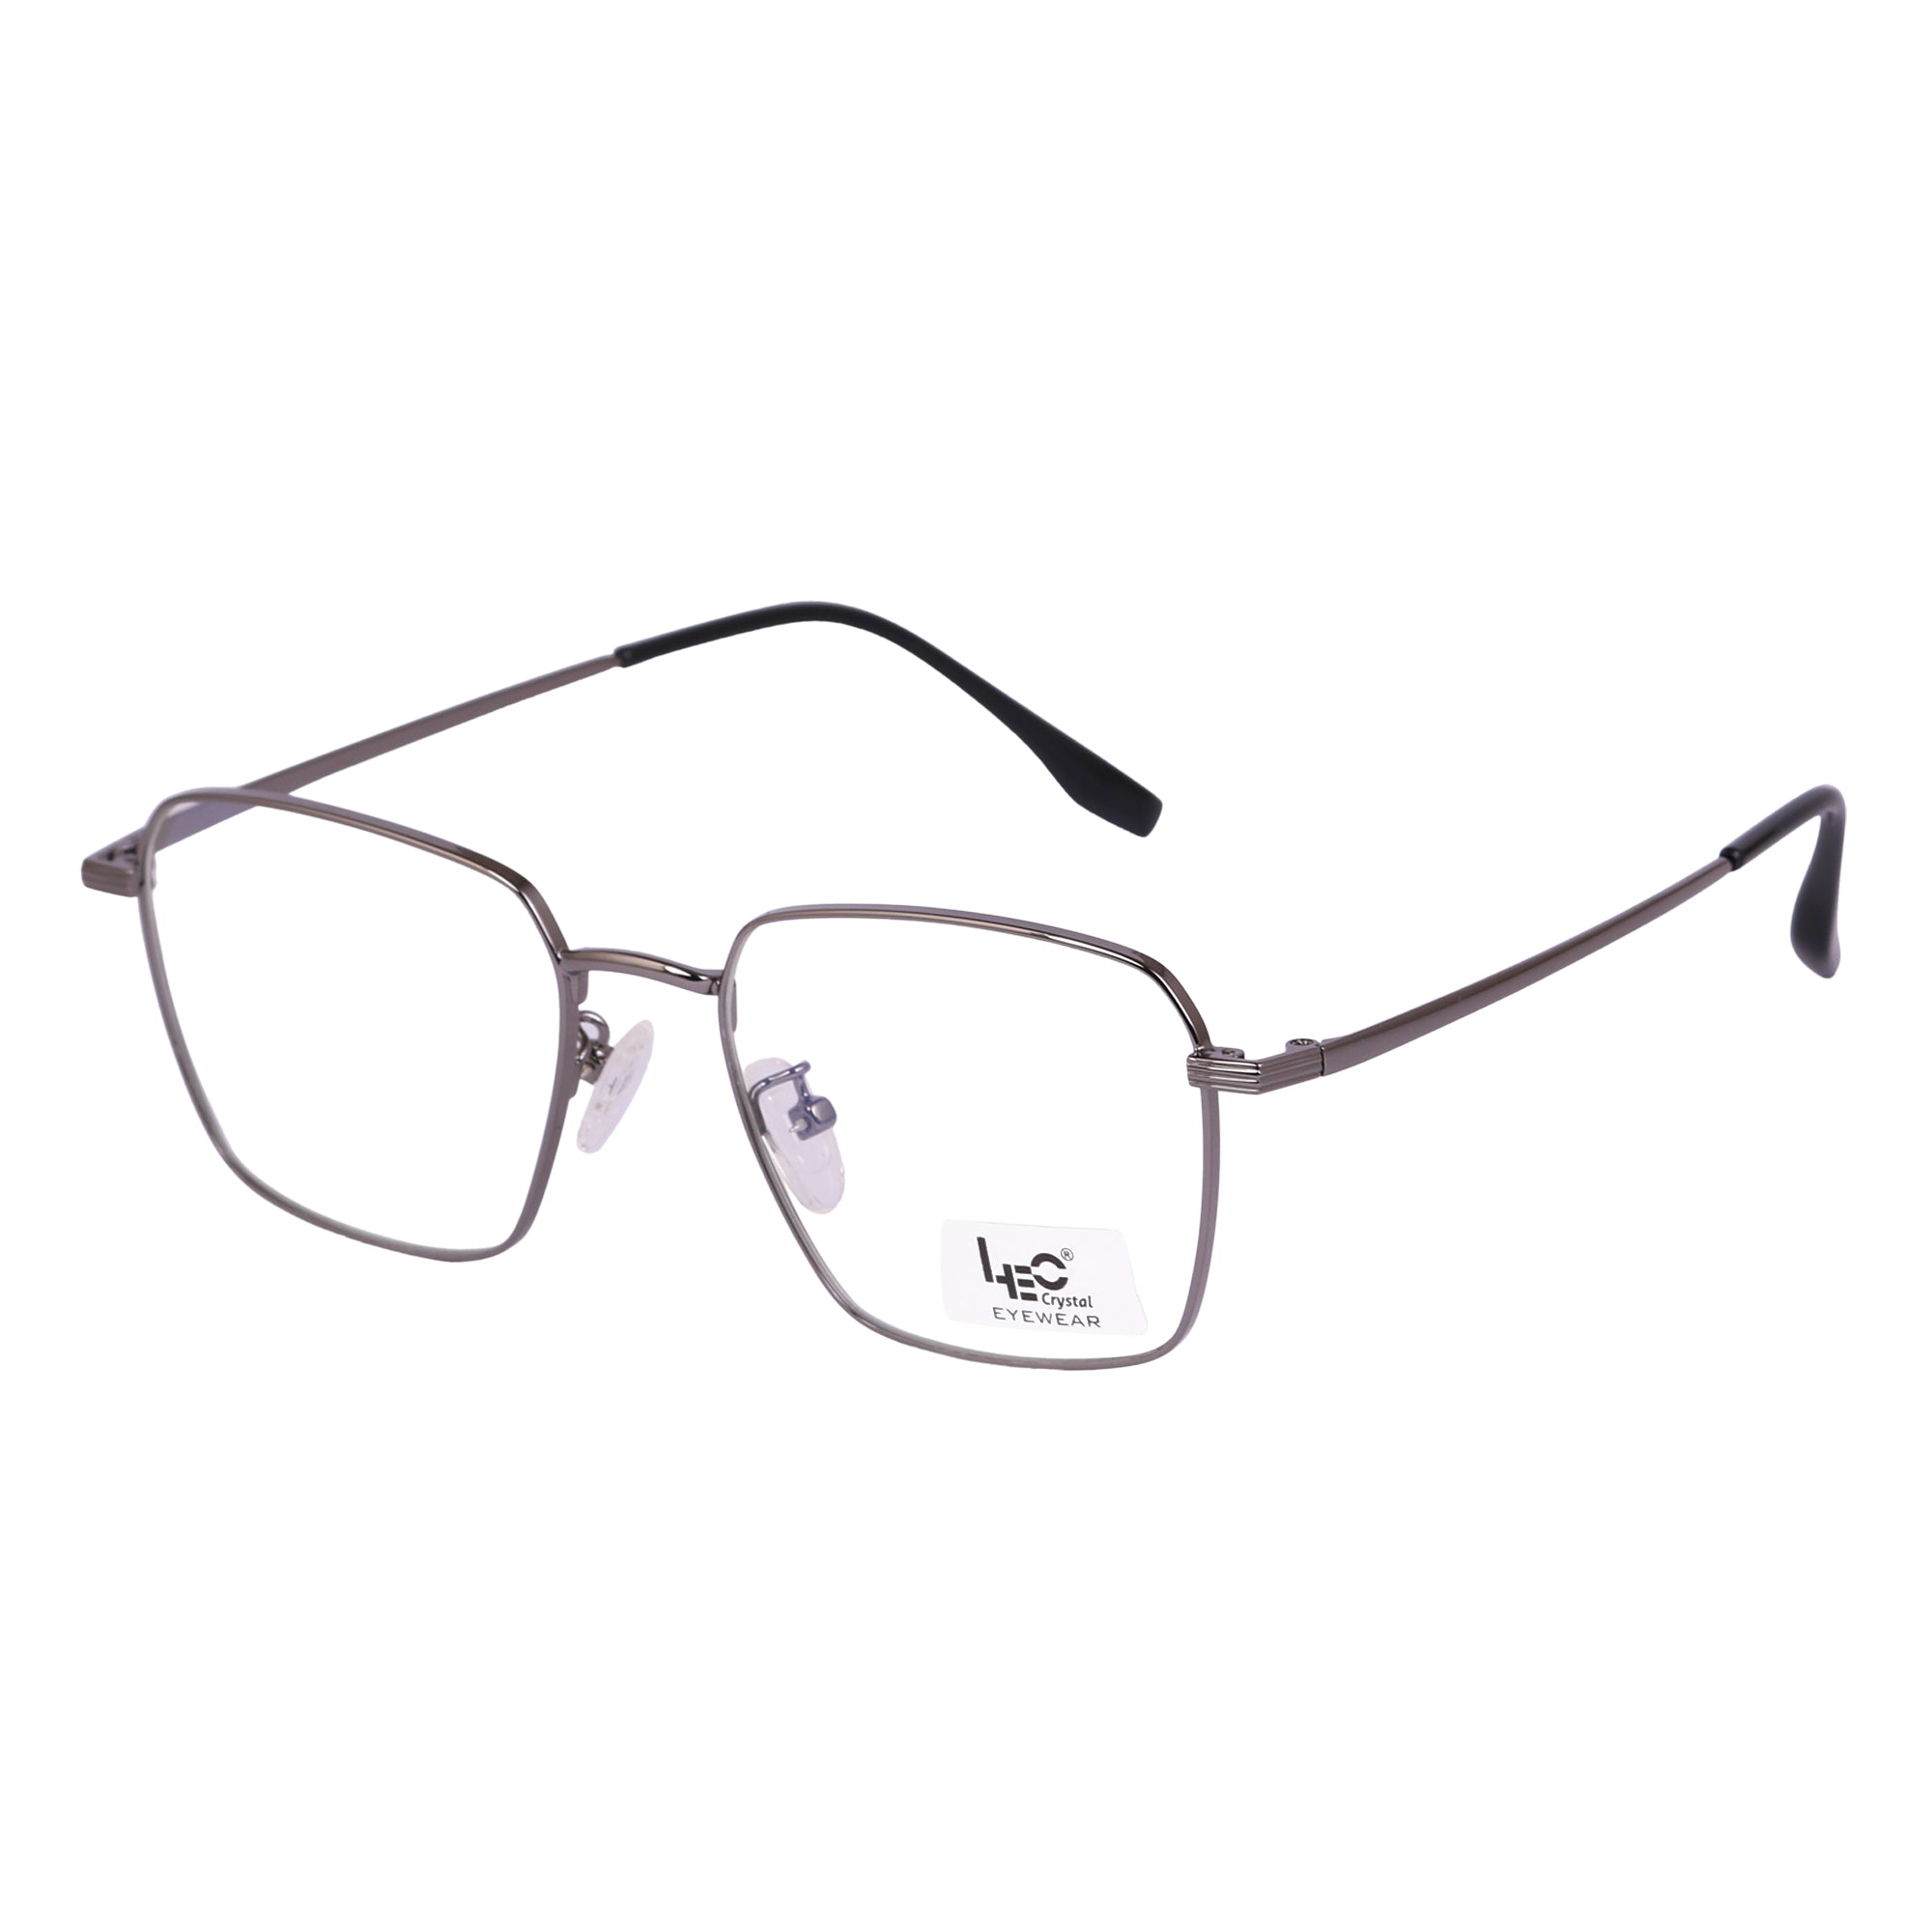 Grey Rimmed Square Metal Eyeglasses - L35006